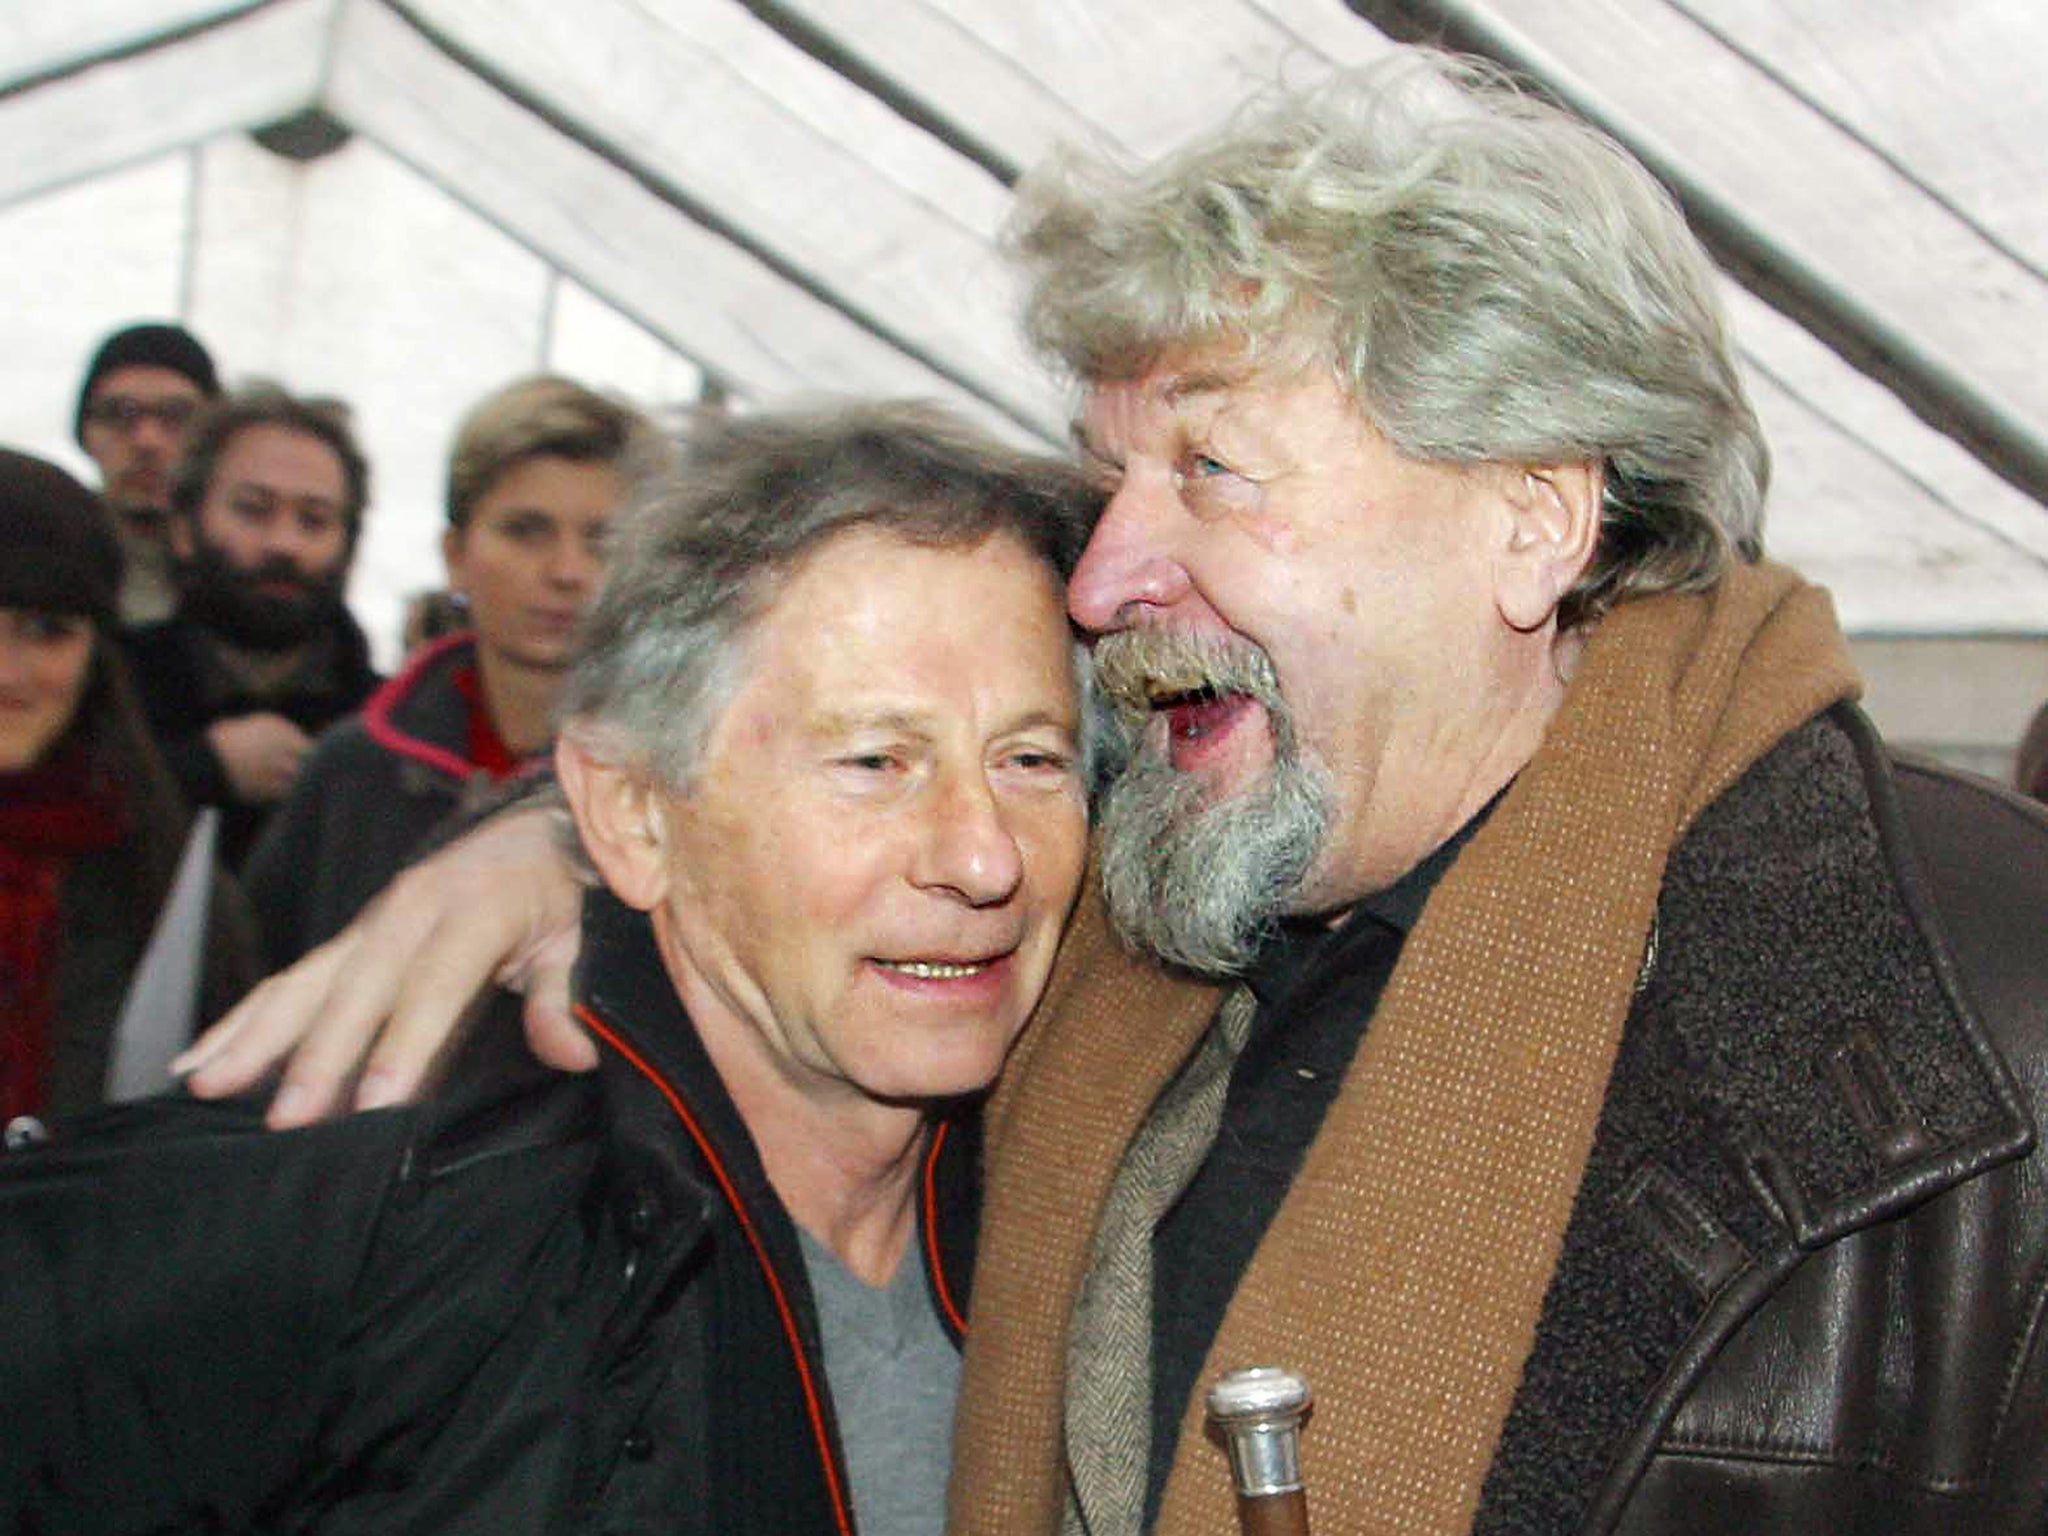 Ondricek, right, with Roman Polanski in 2004